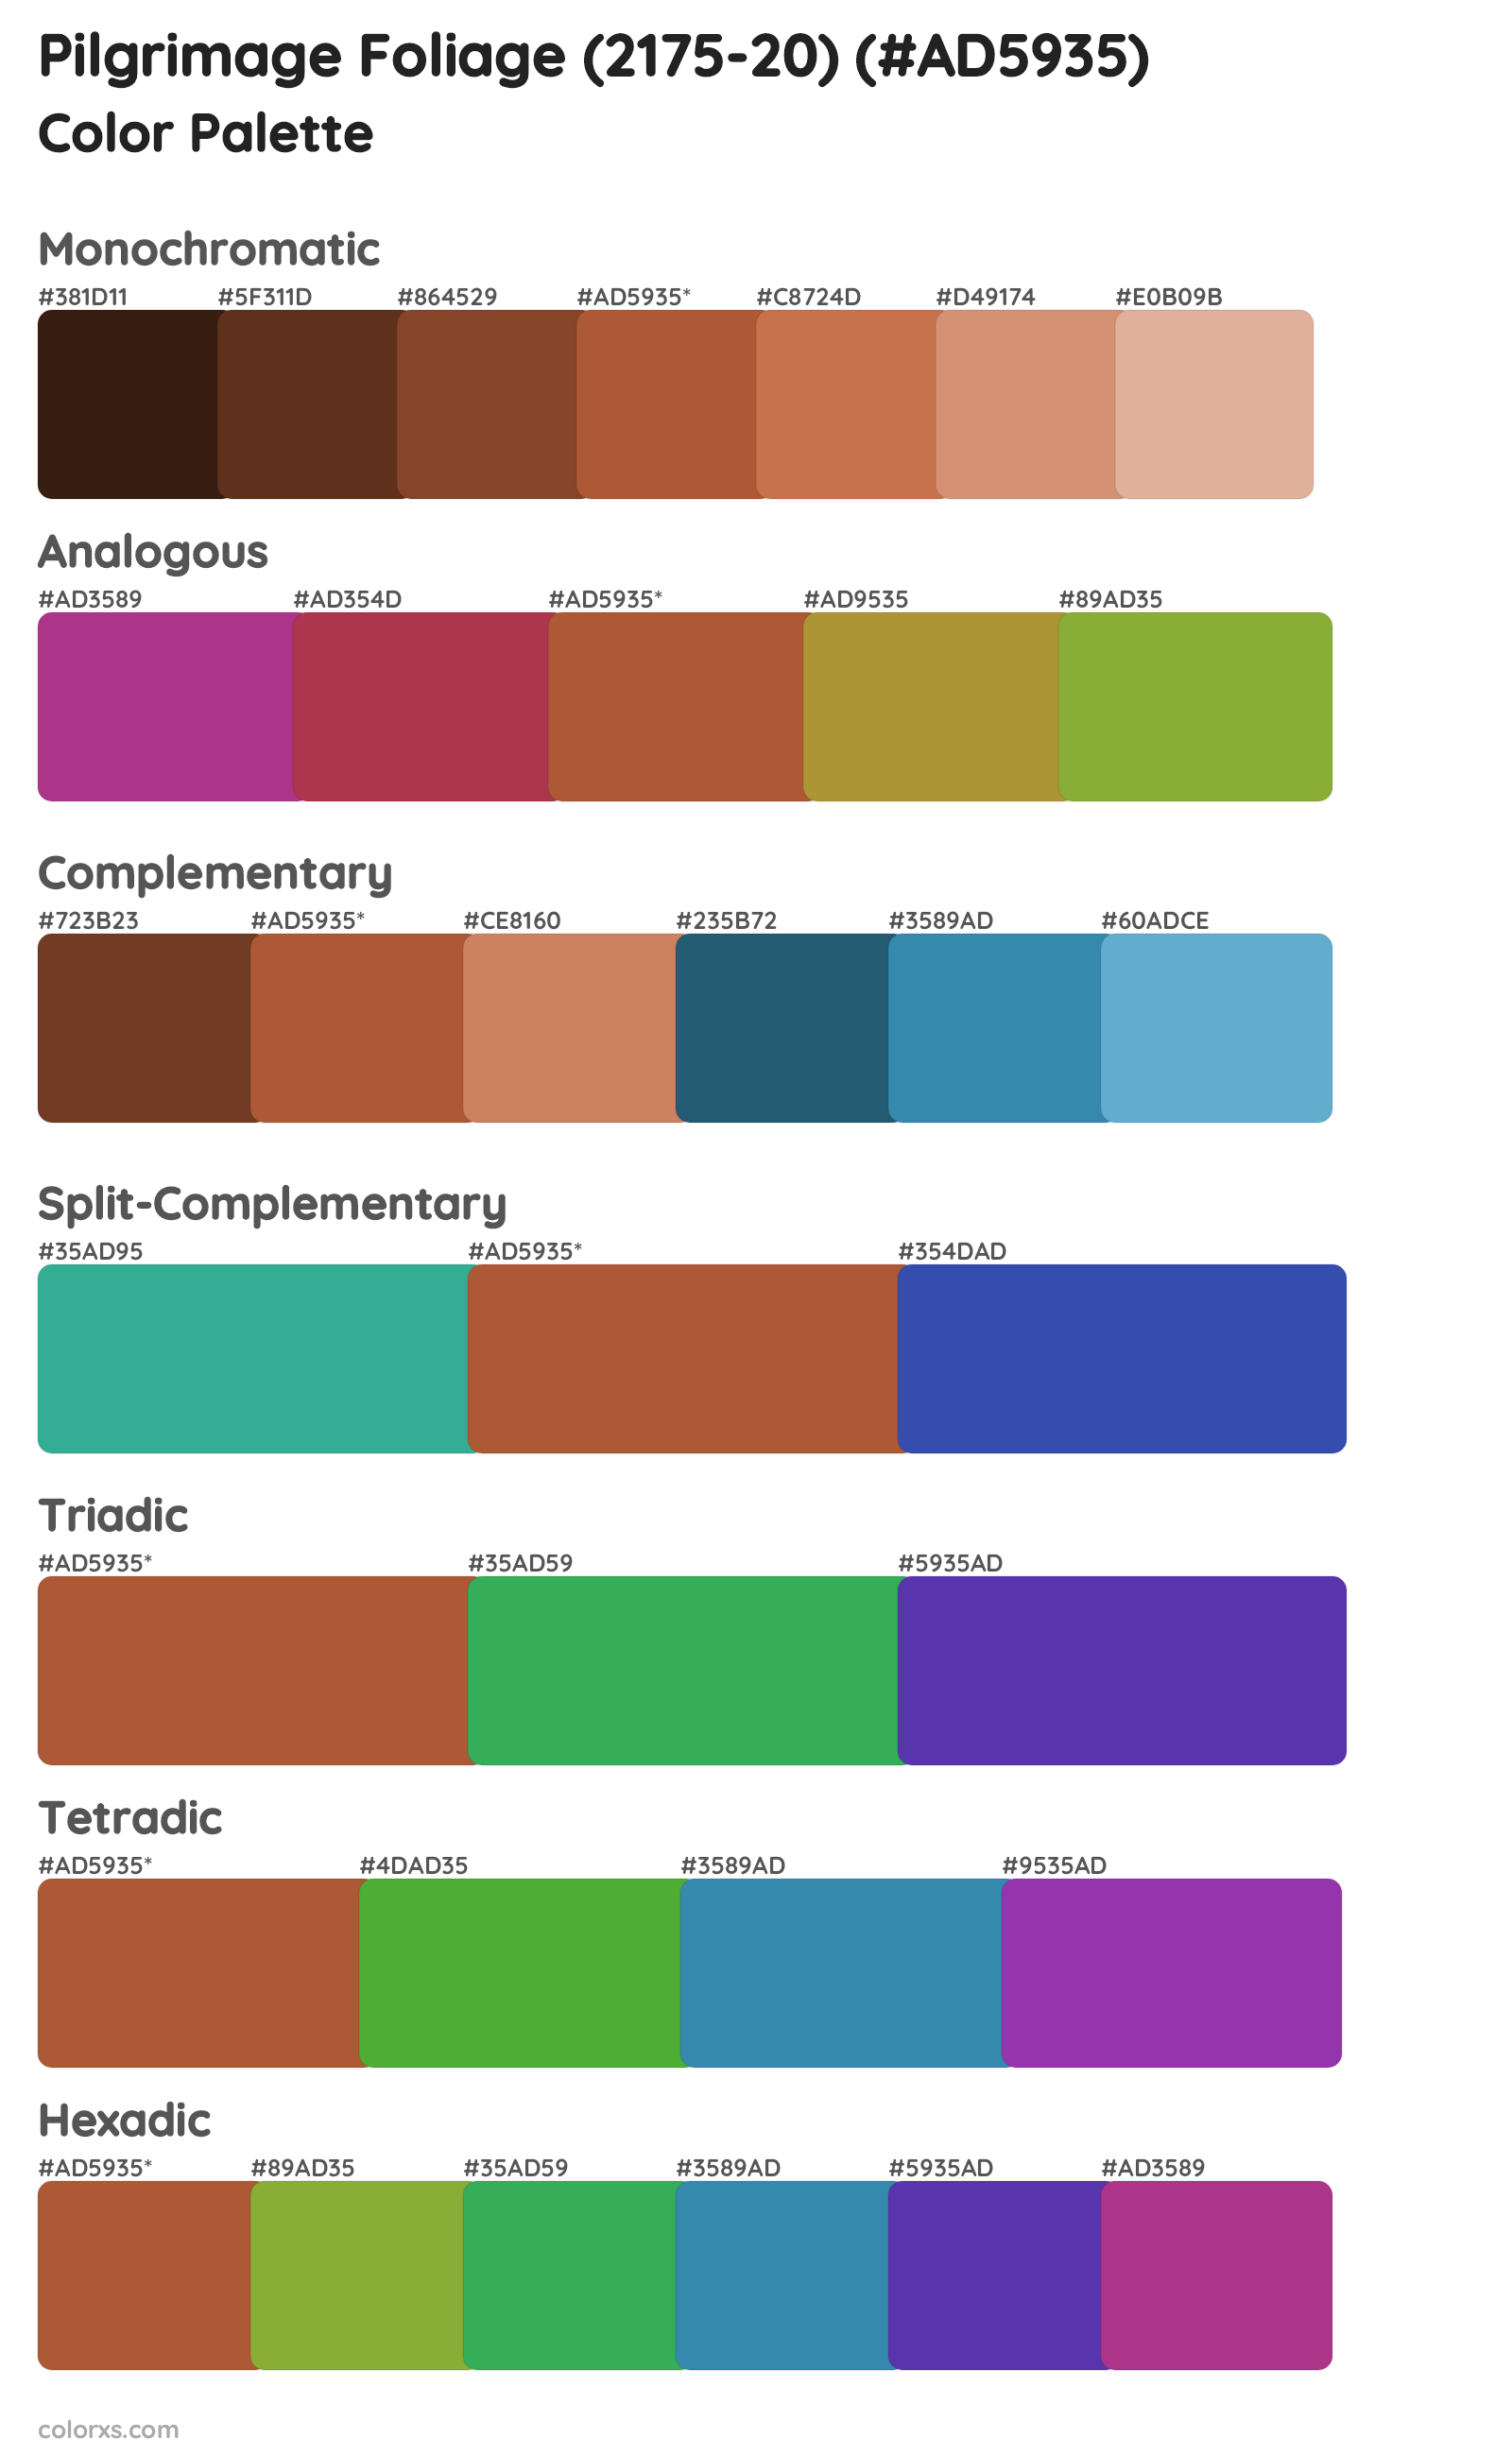 Pilgrimage Foliage (2175-20) Color Scheme Palettes